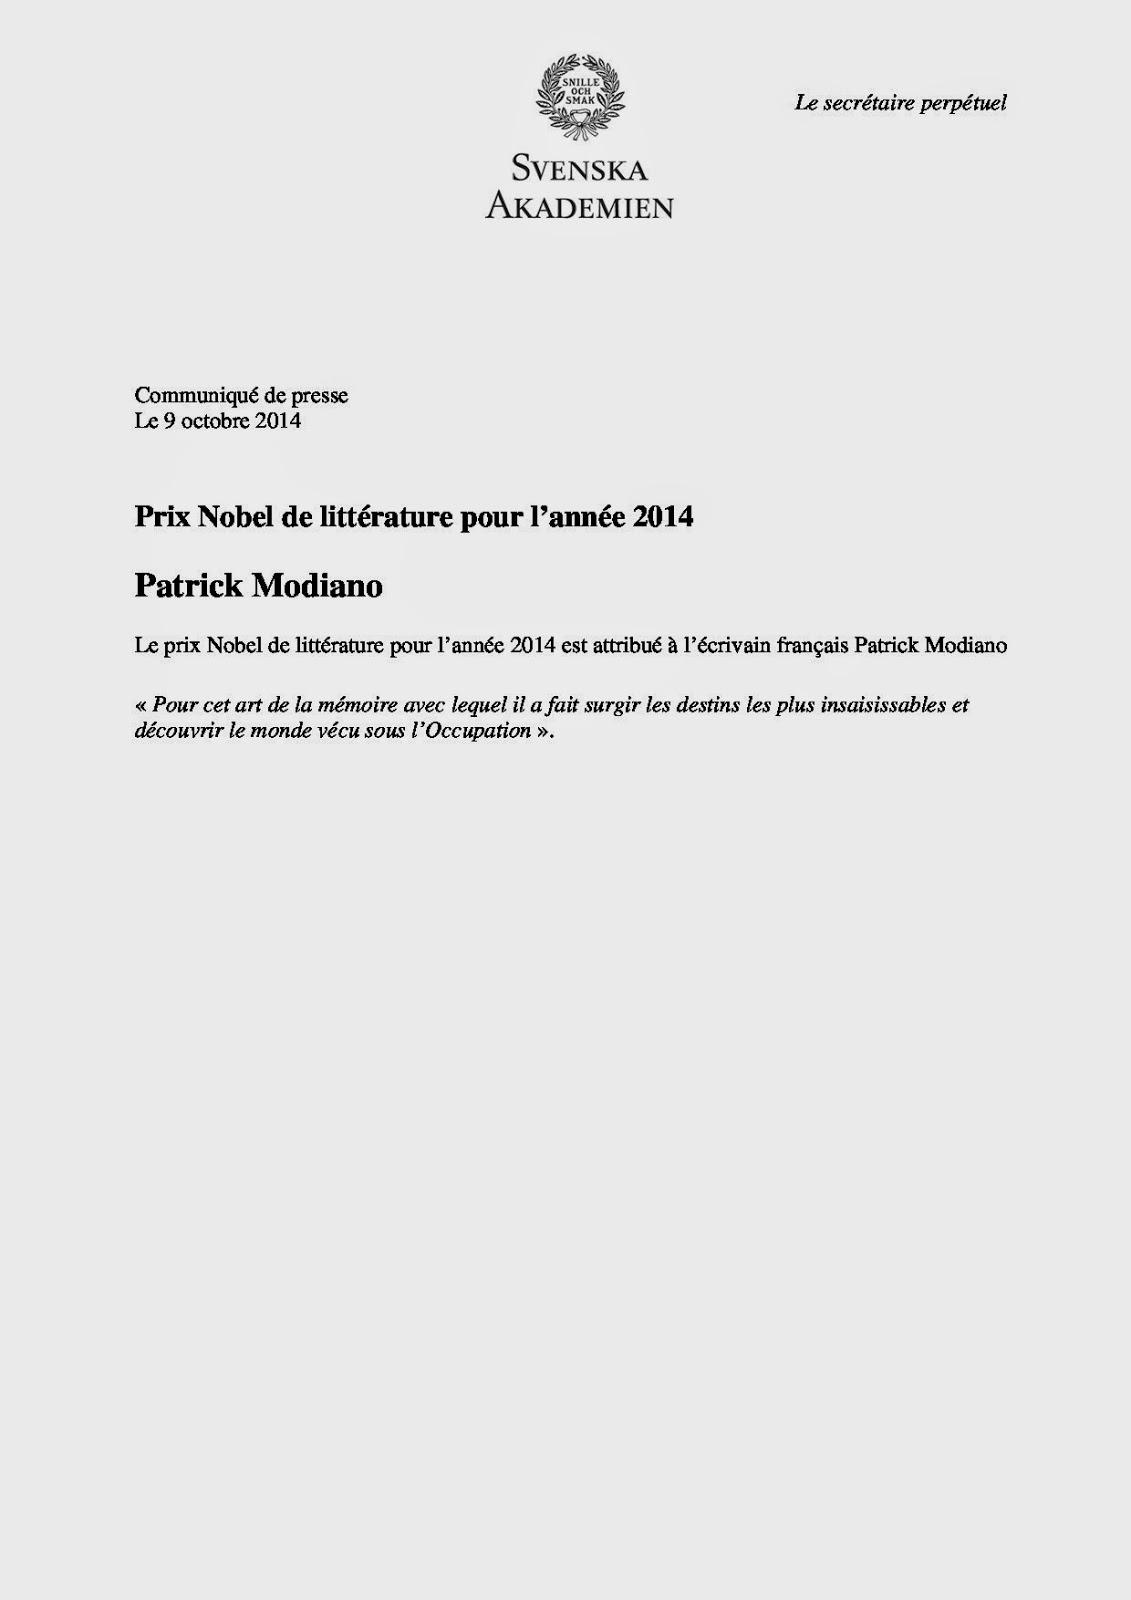 Patrick Modiano prix Nobel de littérature 2014